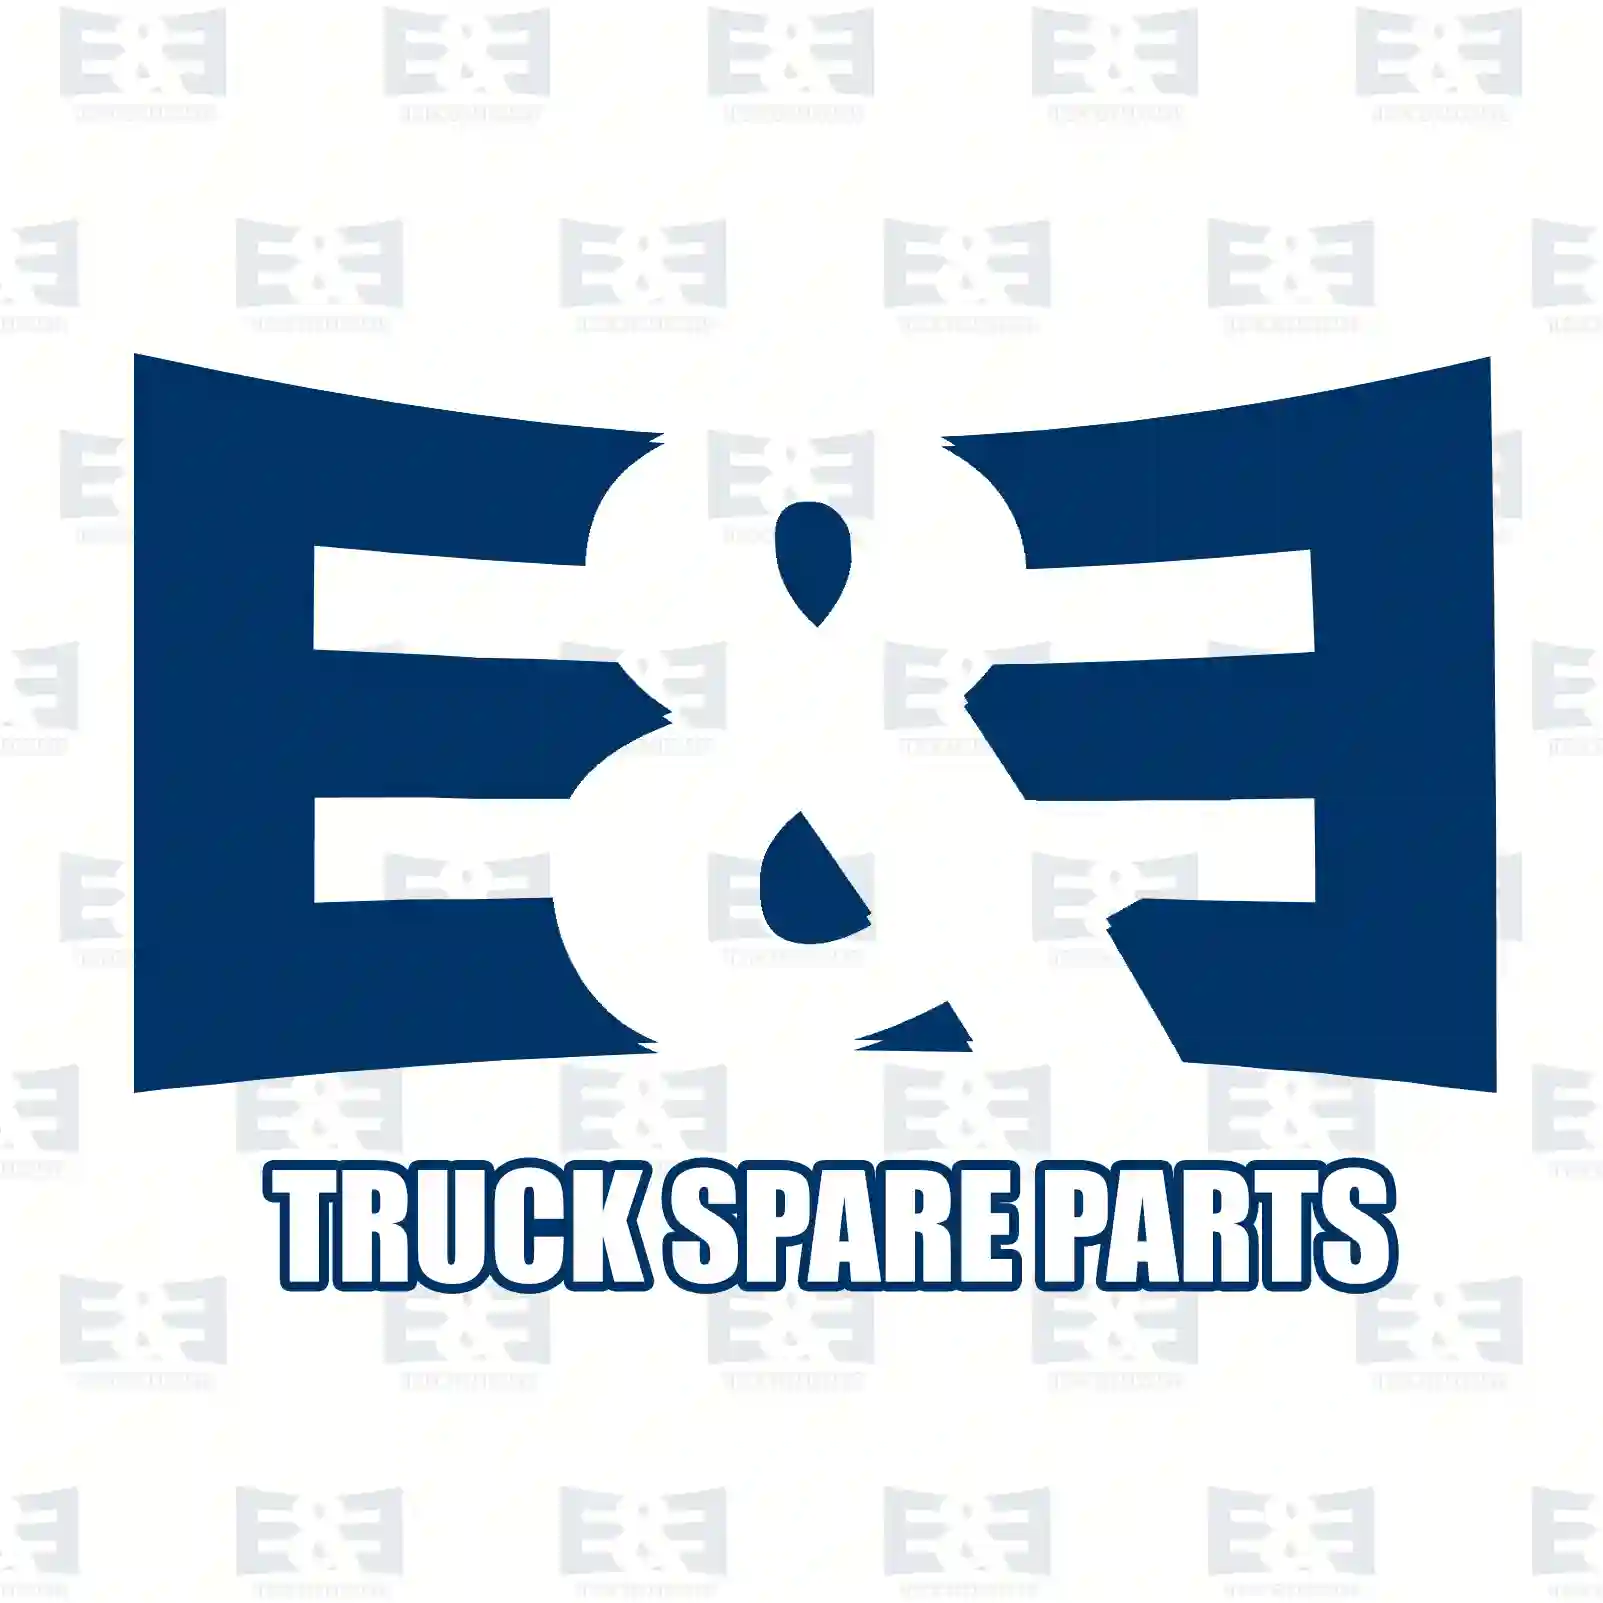 Propeller shaft, 2E2276884, 3894106601, 38941 ||  2E2276884 E&E Truck Spare Parts | Truck Spare Parts, Auotomotive Spare Parts Propeller shaft, 2E2276884, 3894106601, 38941 ||  2E2276884 E&E Truck Spare Parts | Truck Spare Parts, Auotomotive Spare Parts